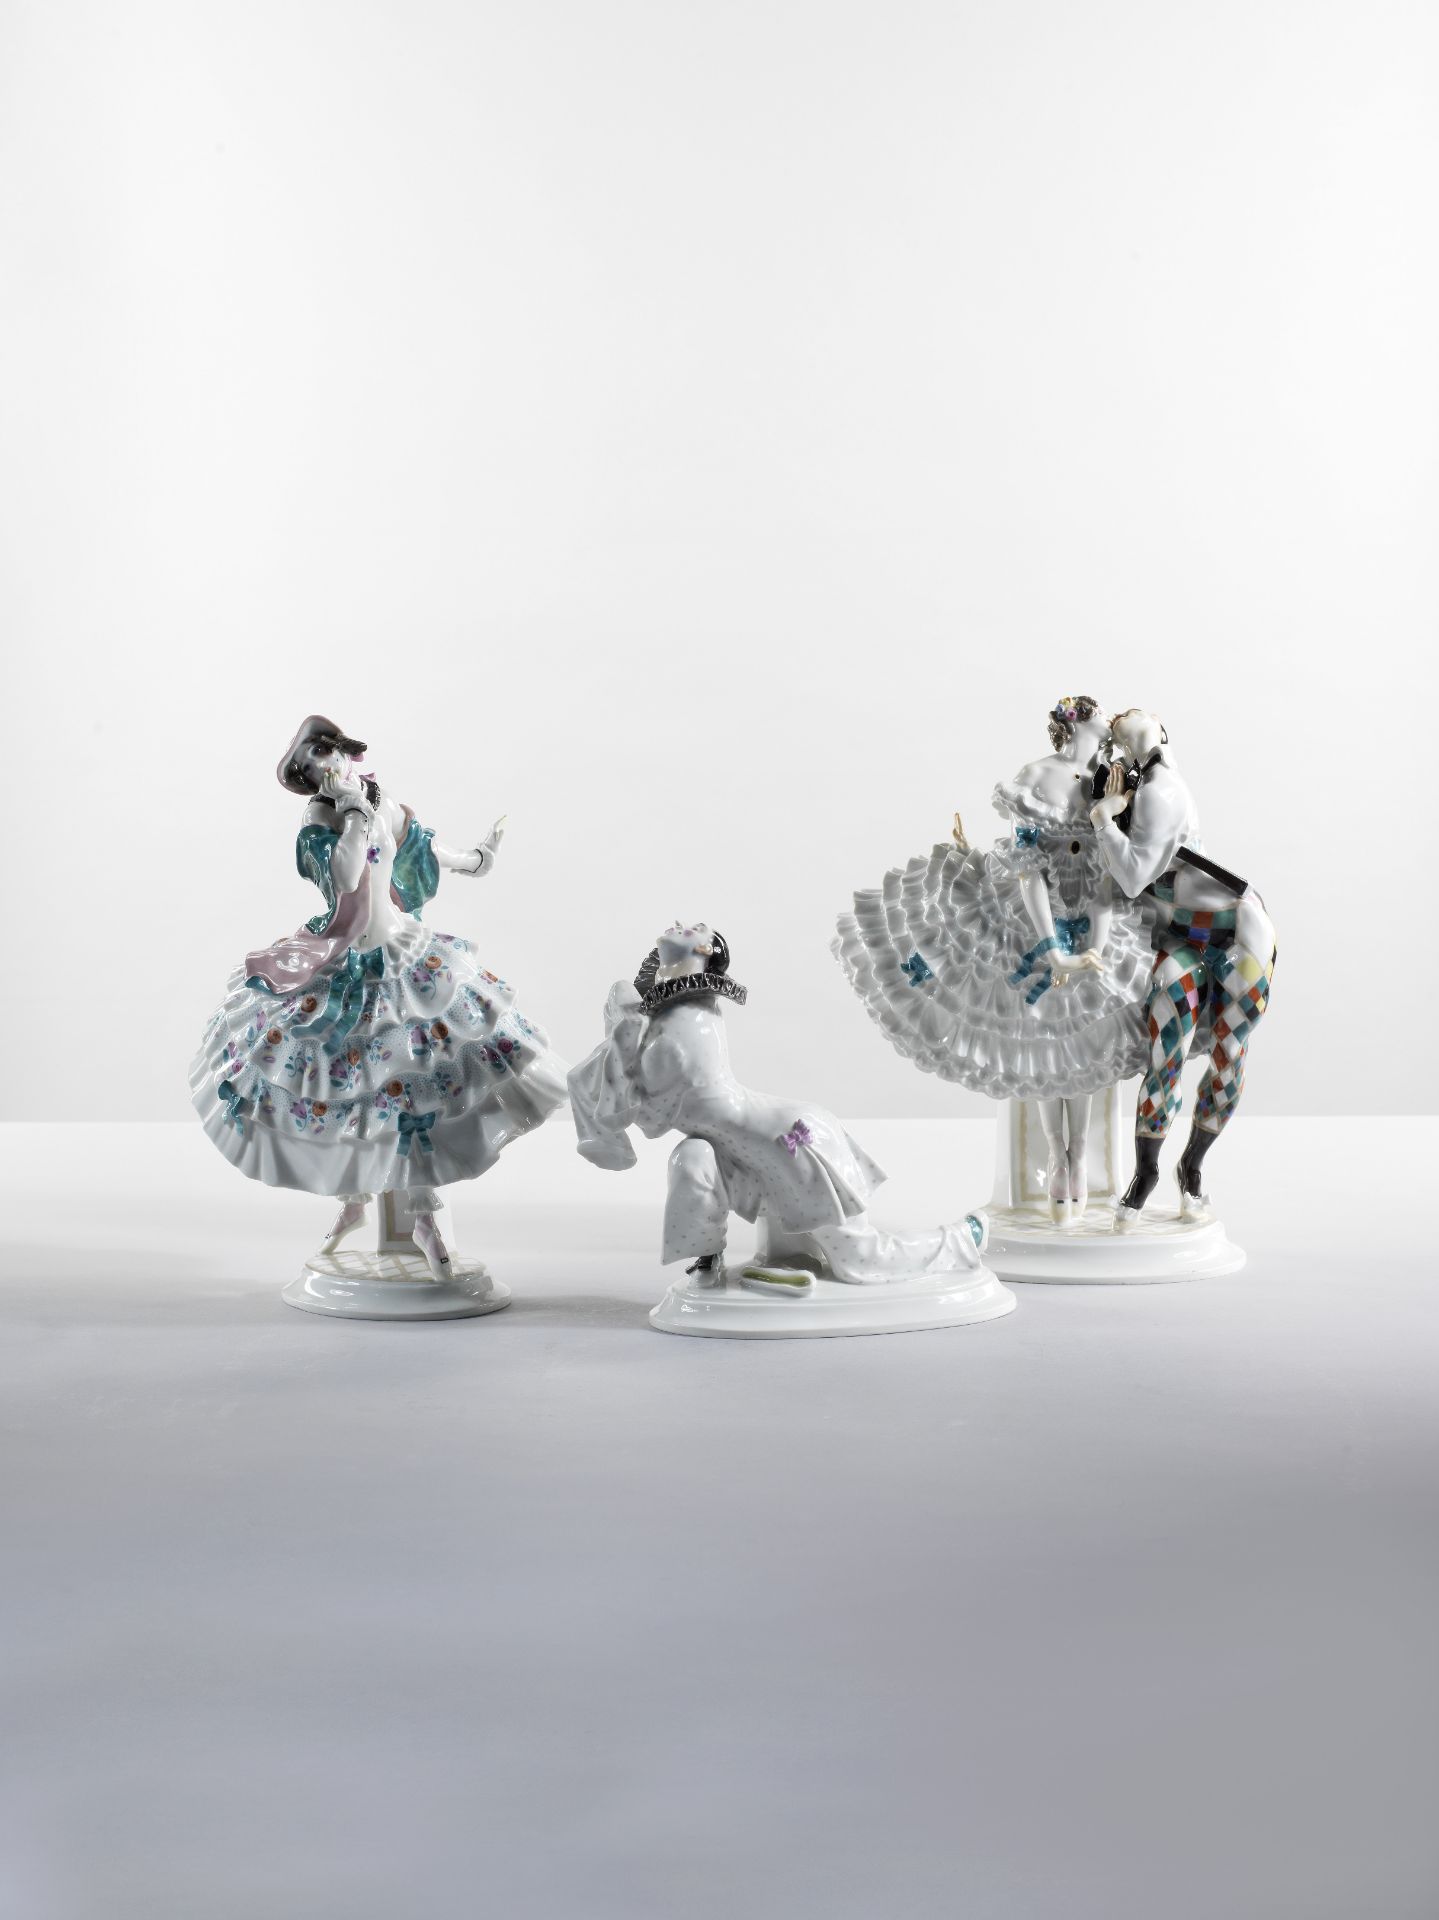 Suite de cinq personnages en porcelaine issus du ballet 'Le Carnaval' des Ballets Russes, circa 1...